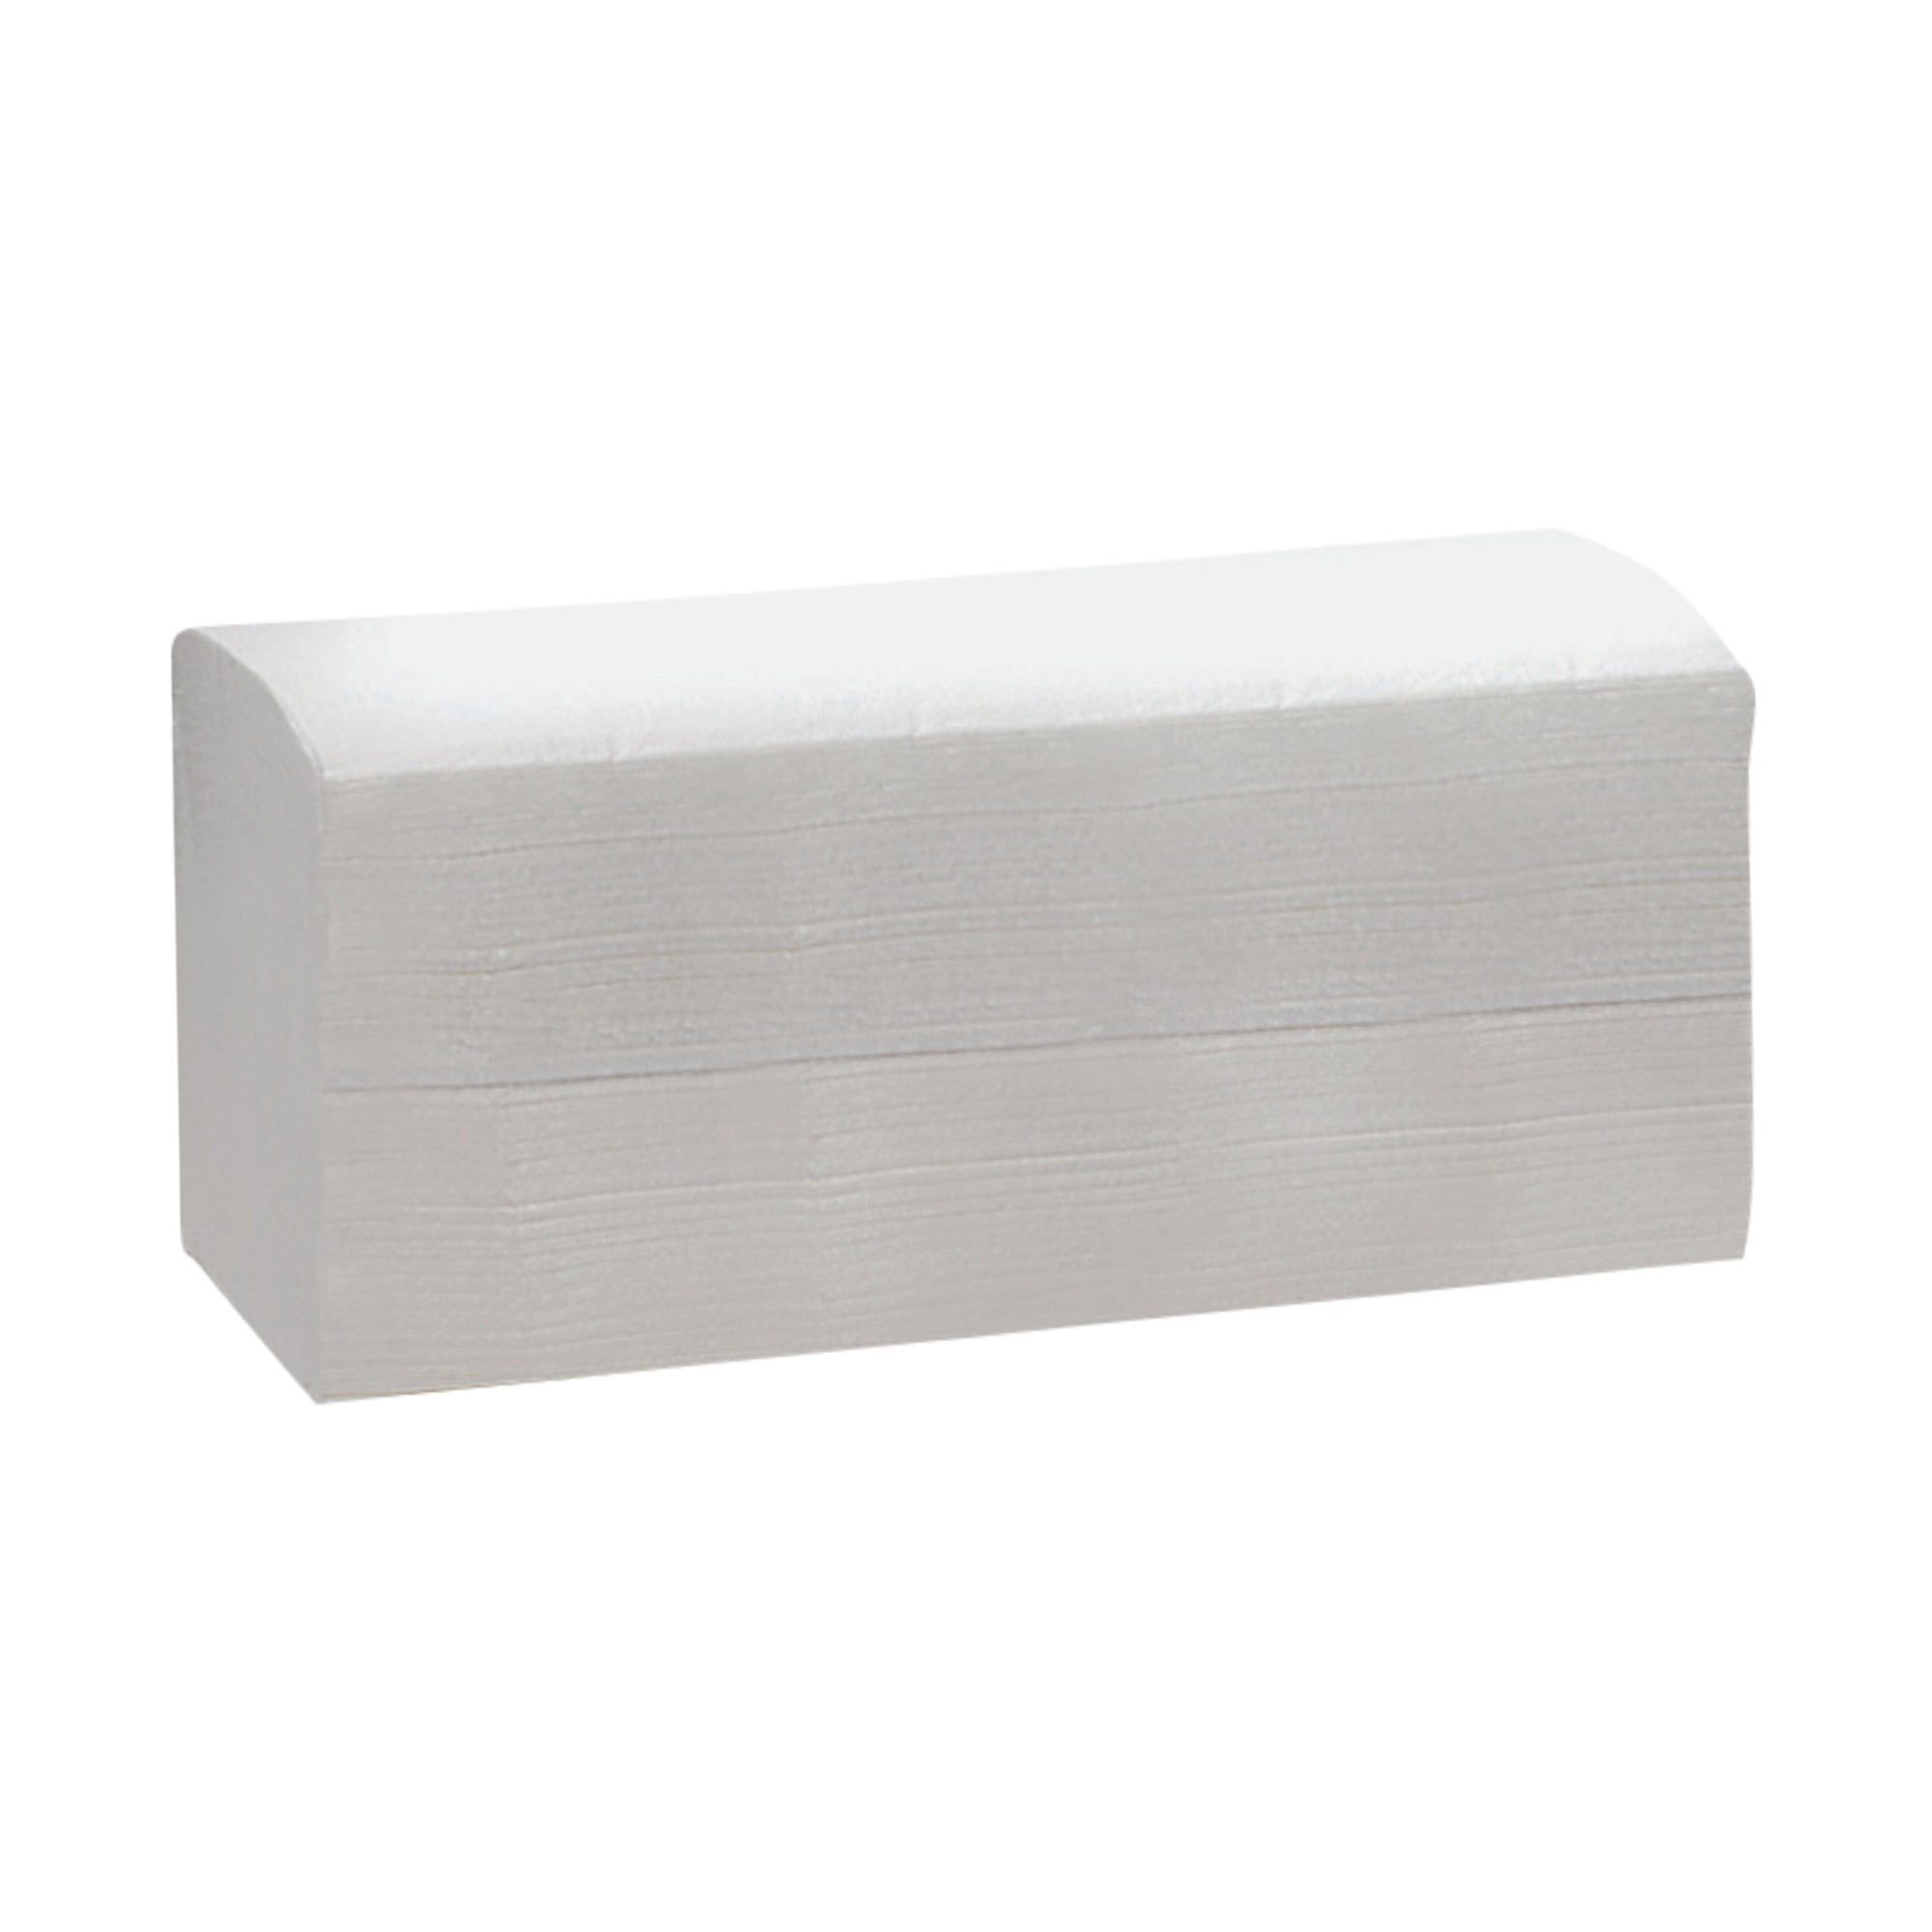 Pure cellulose disposable towel 22.5 x 21 cm 3150 pcs